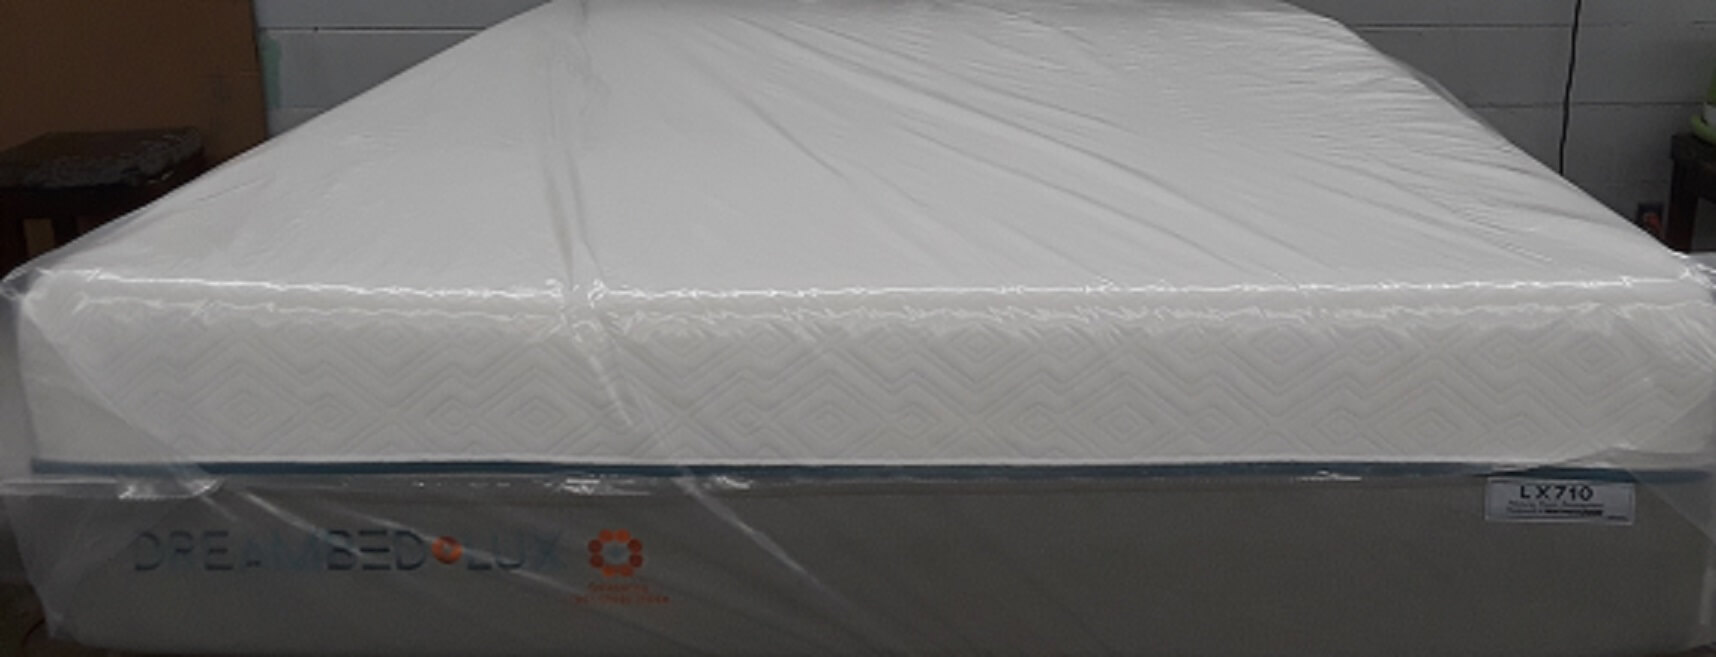 dream bed lux lx710 mattress